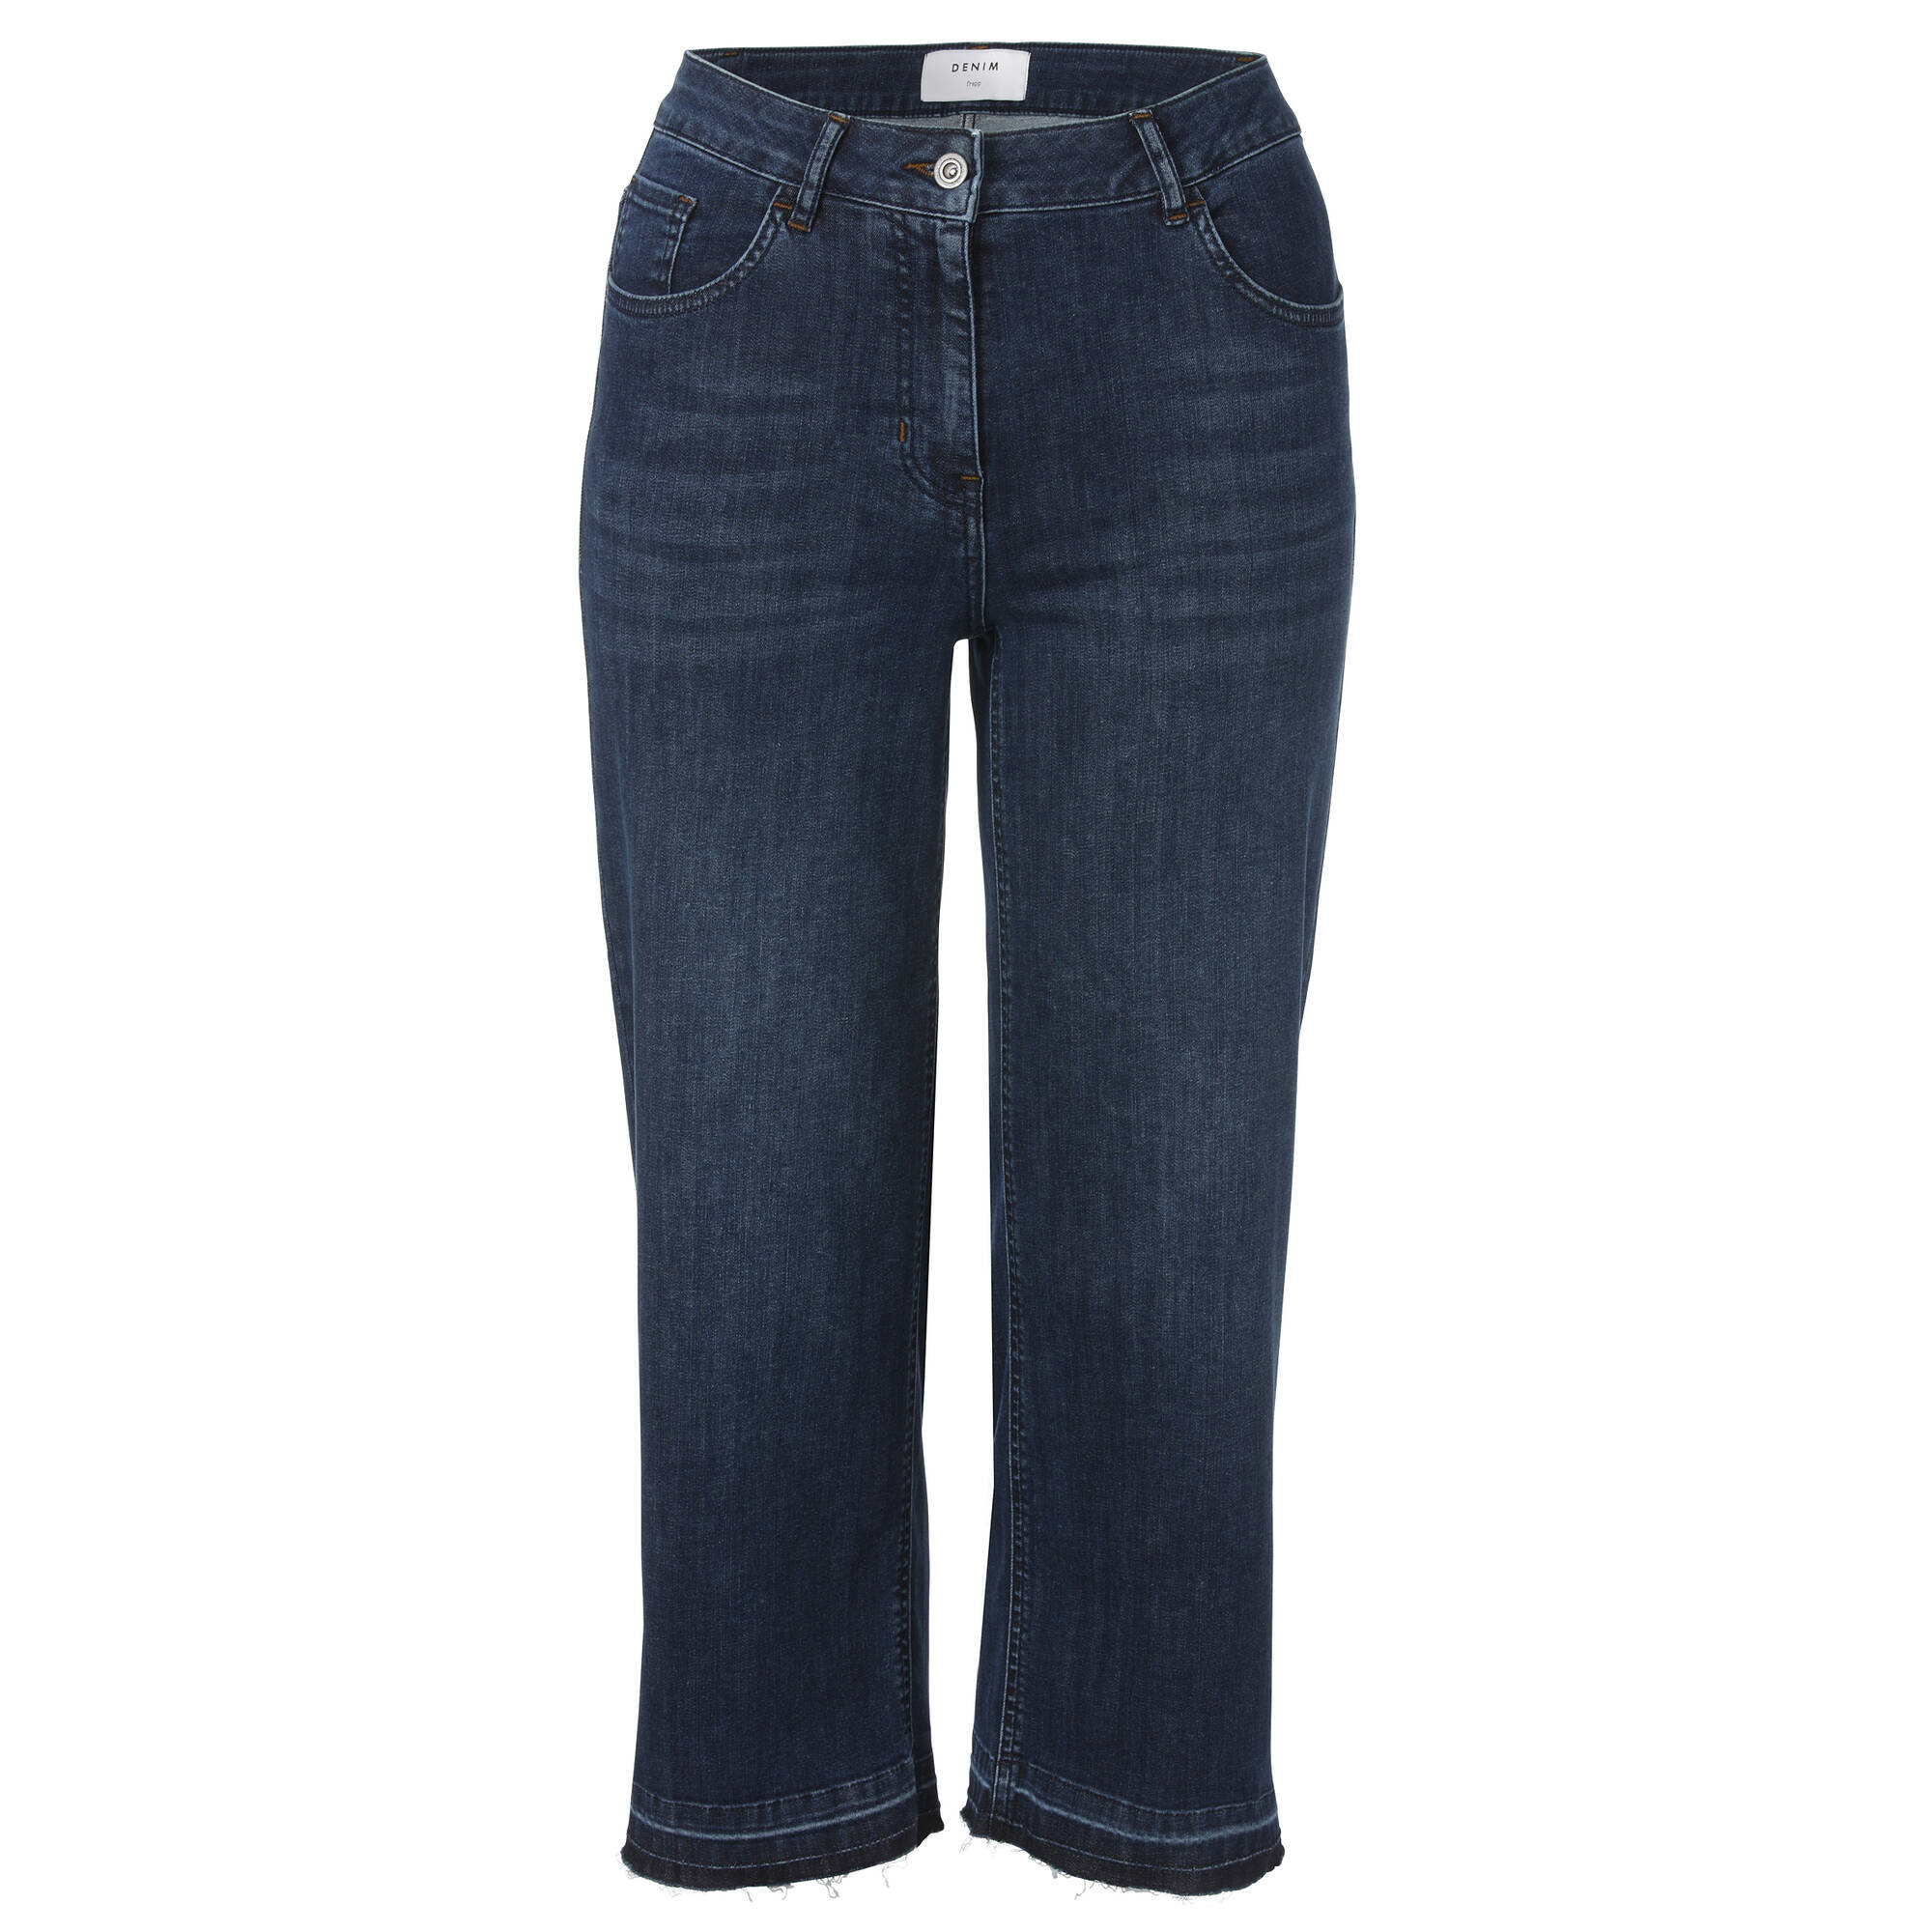 Modische 5-Pocket-Jeans in unifarbenem Stil